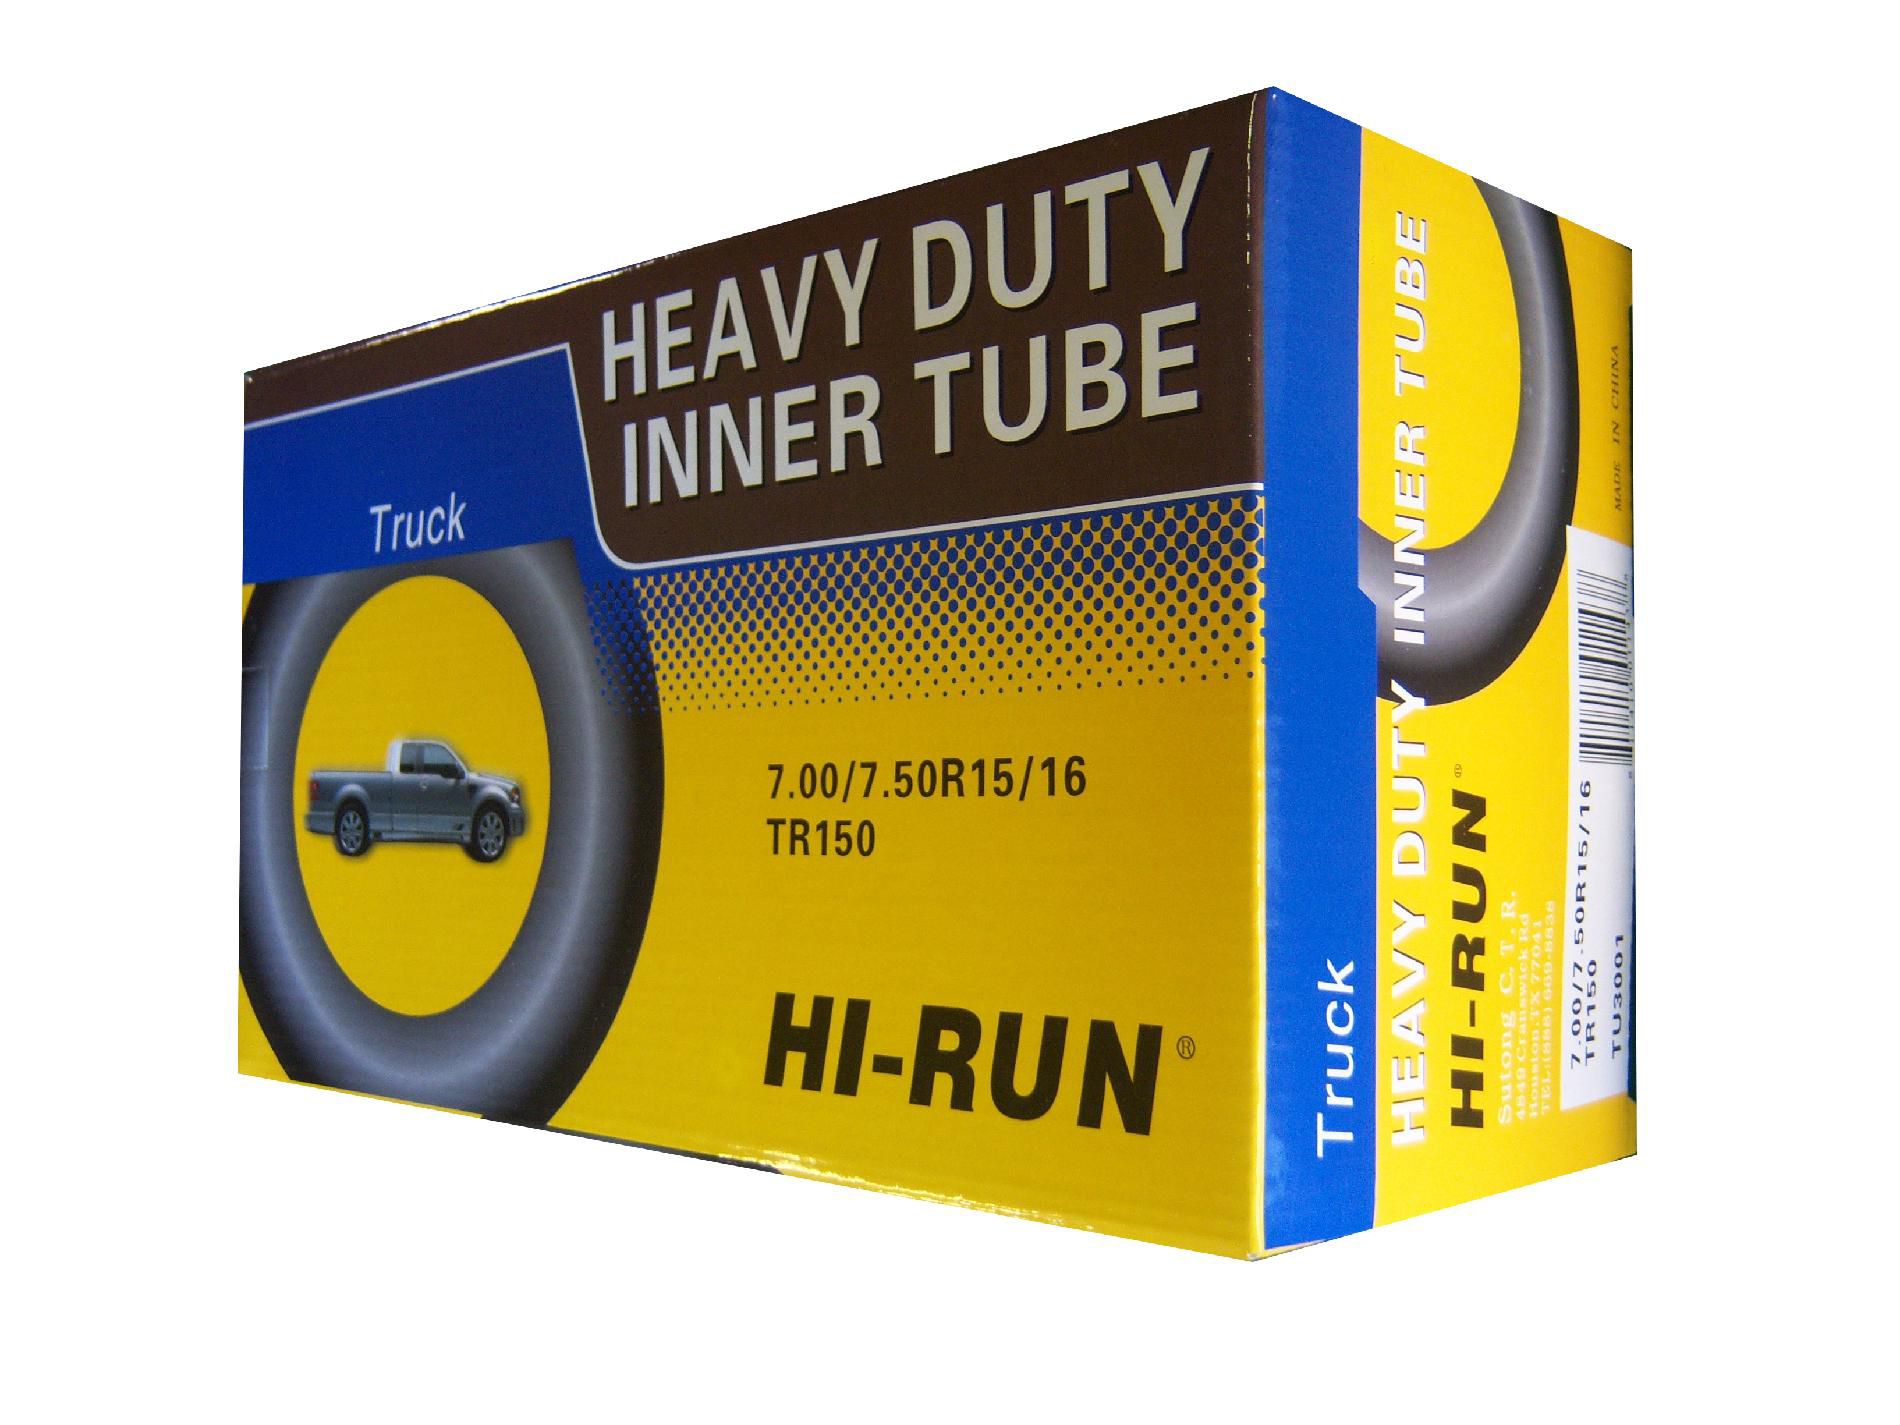 HI-RUN TUN3001 Truck Tire Tube 700/750r15/16